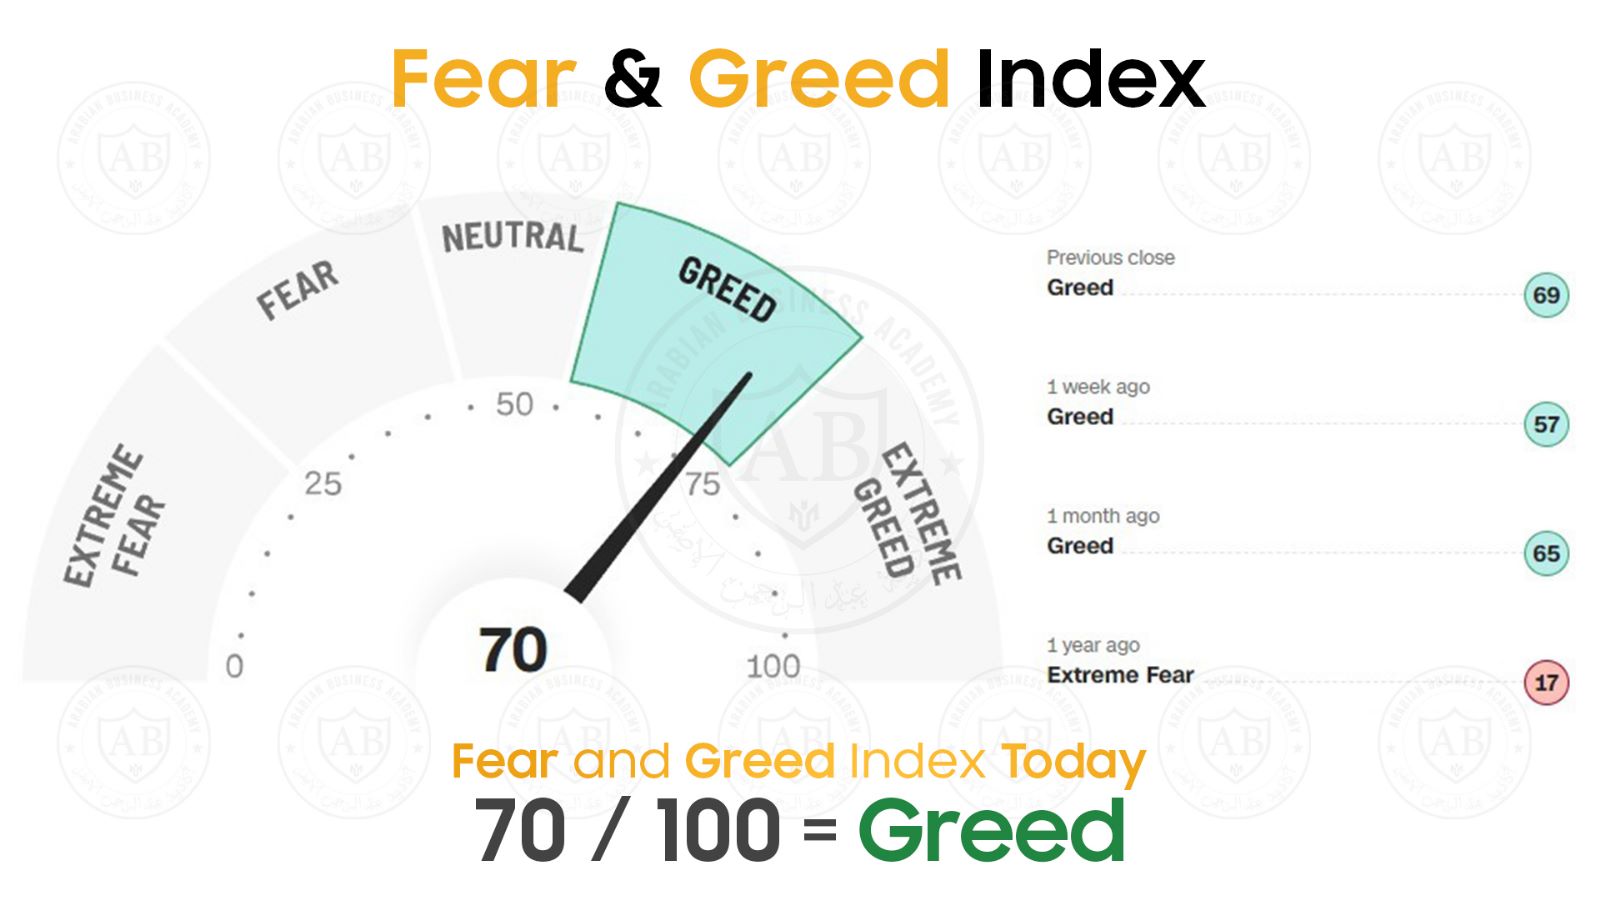 مؤشر  Fear and Greed  في أسواق الأسهم يشير  الى 70 /100  لجلسة اليوم